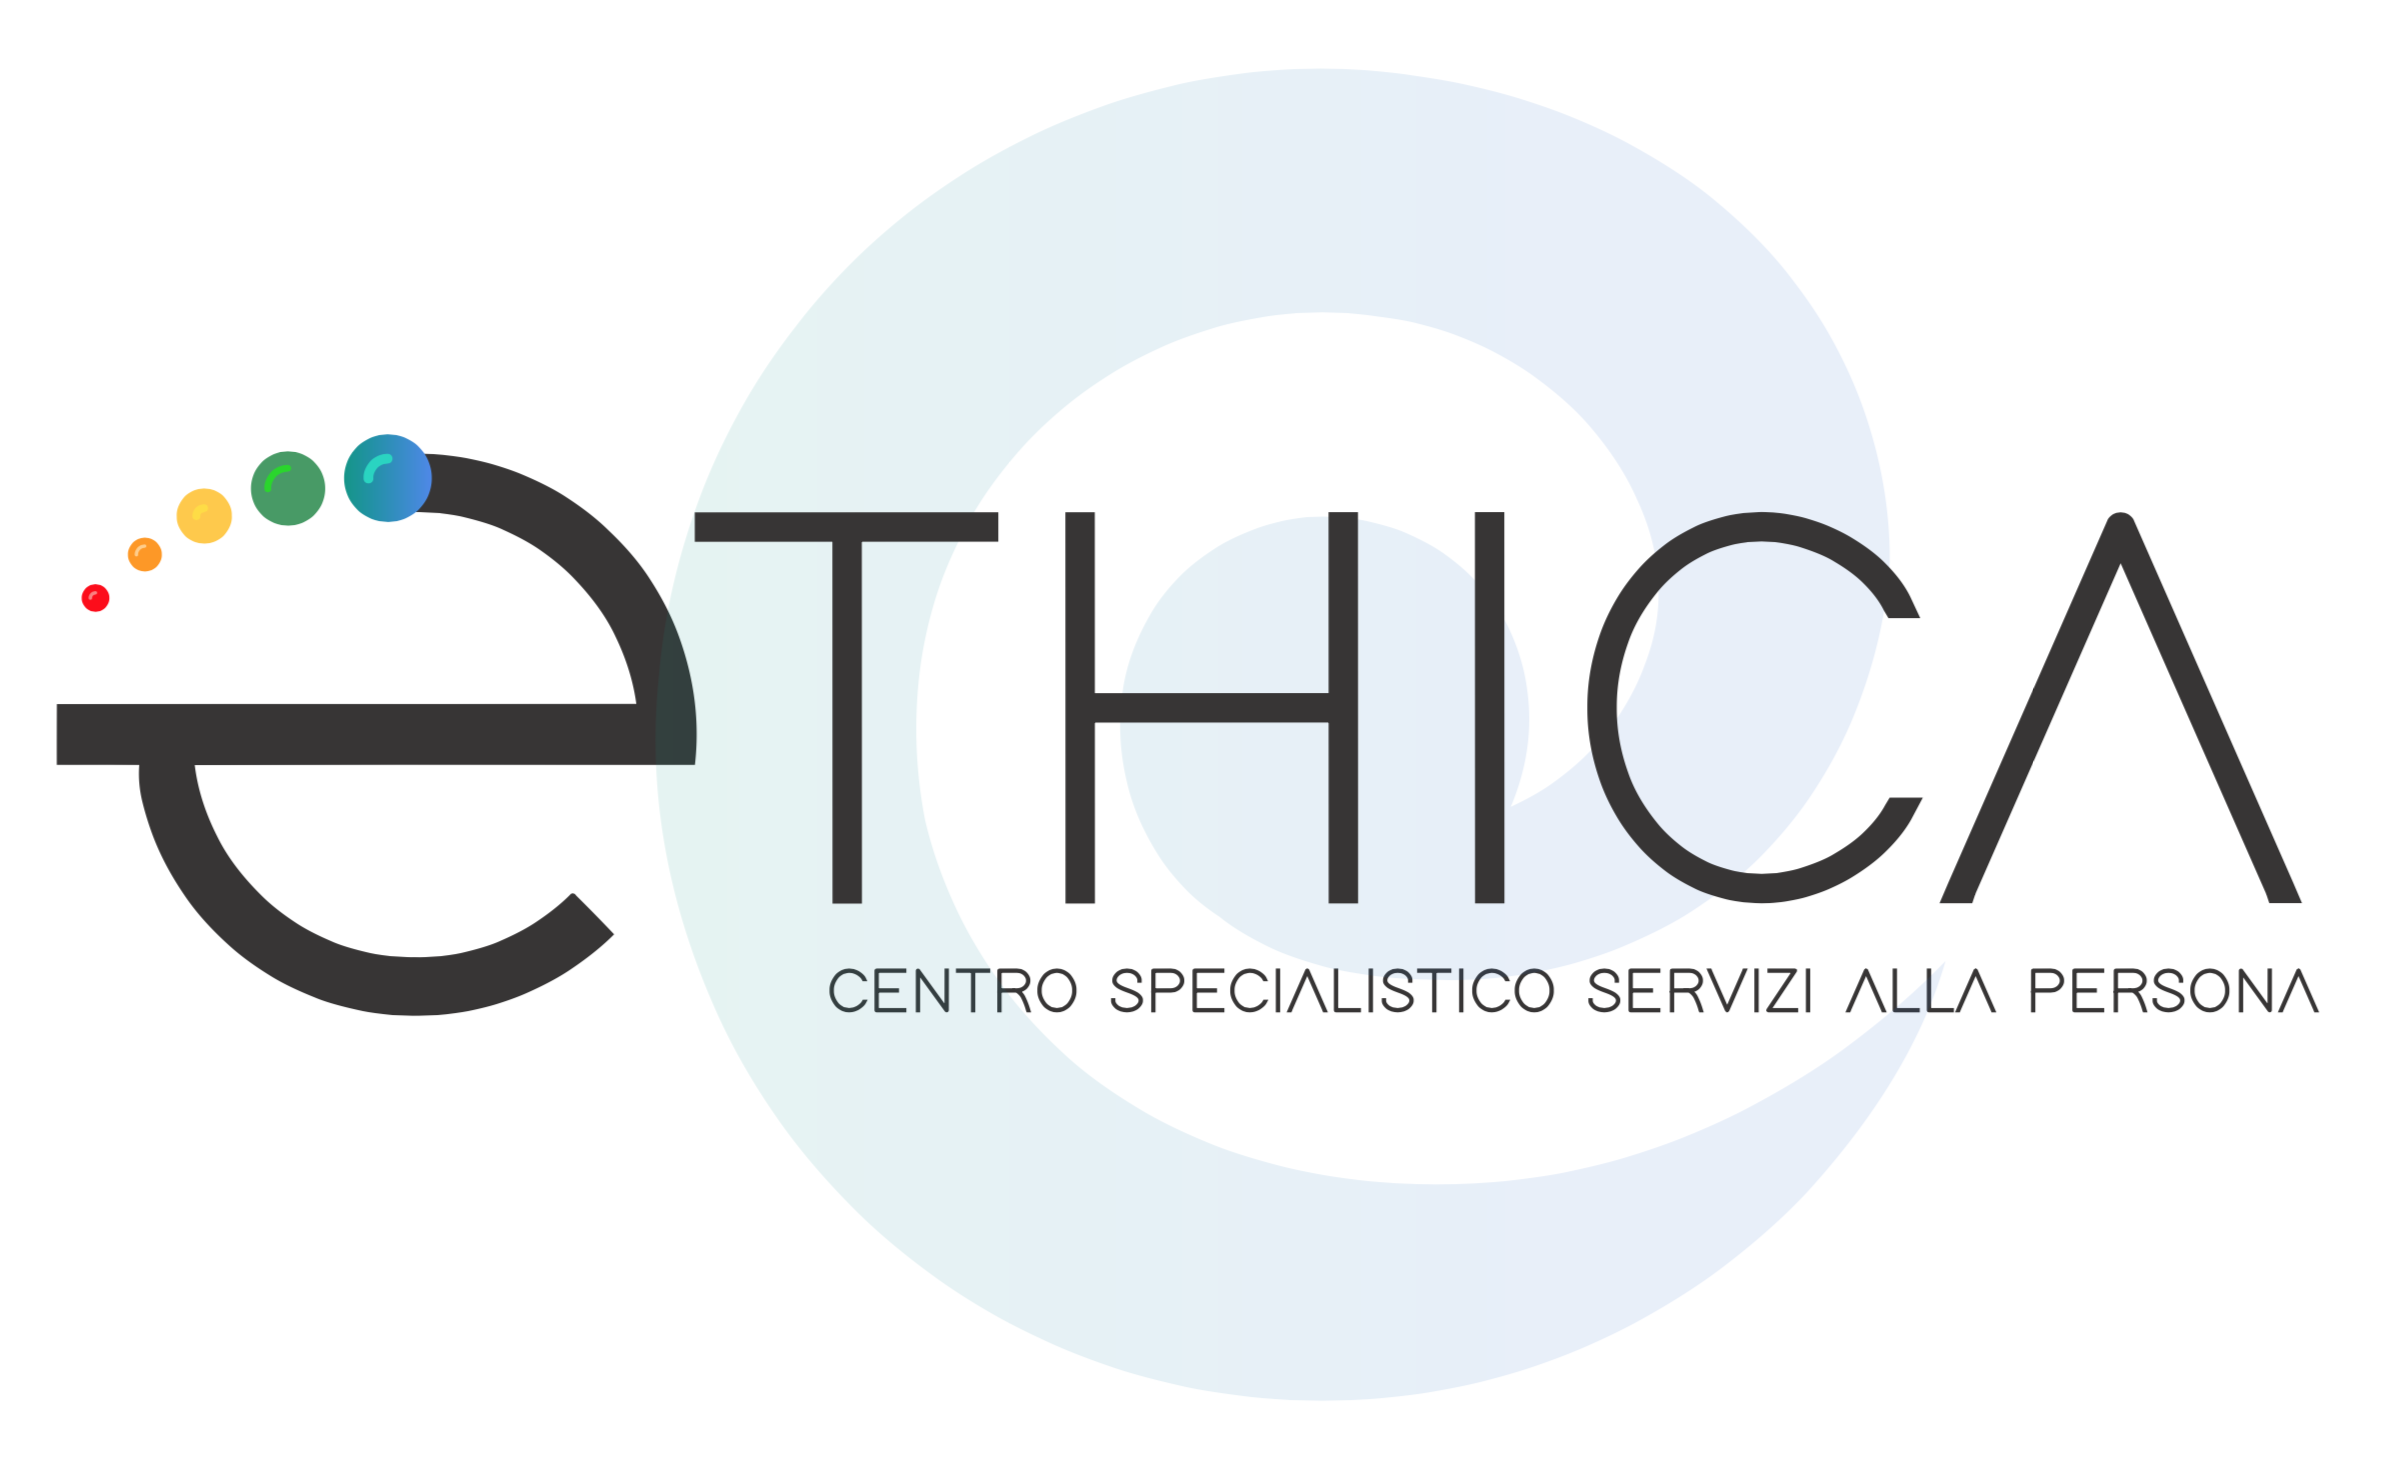 Ethica Center - Centro specialistico servizi alla persona